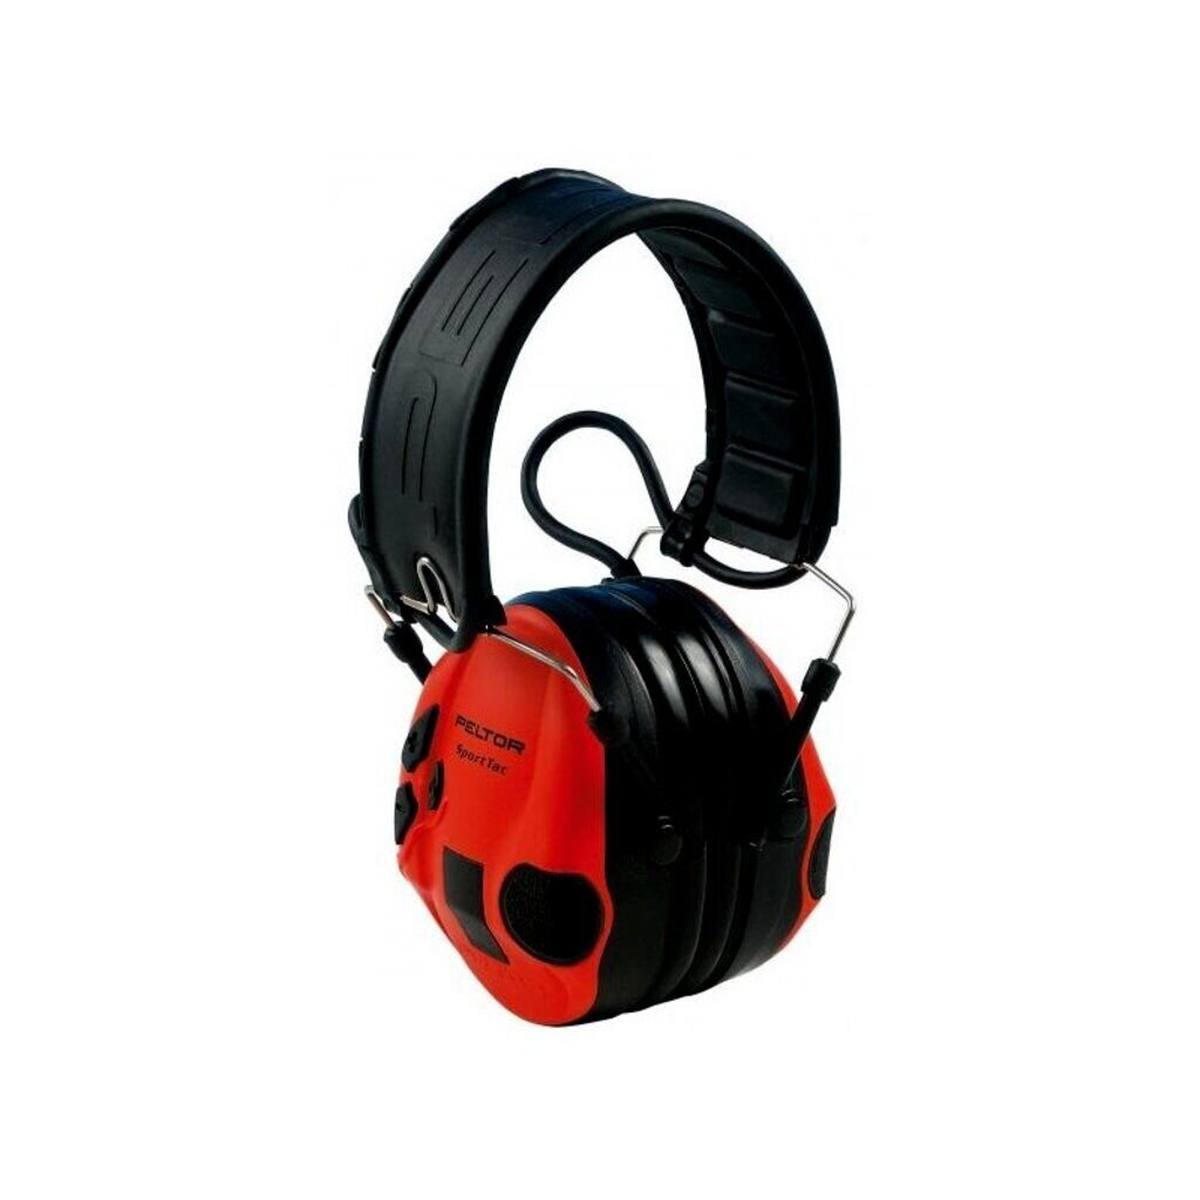 3M PELTOR SportTac, 26 dB, black/red capsules, foldable headband, STAC-RD